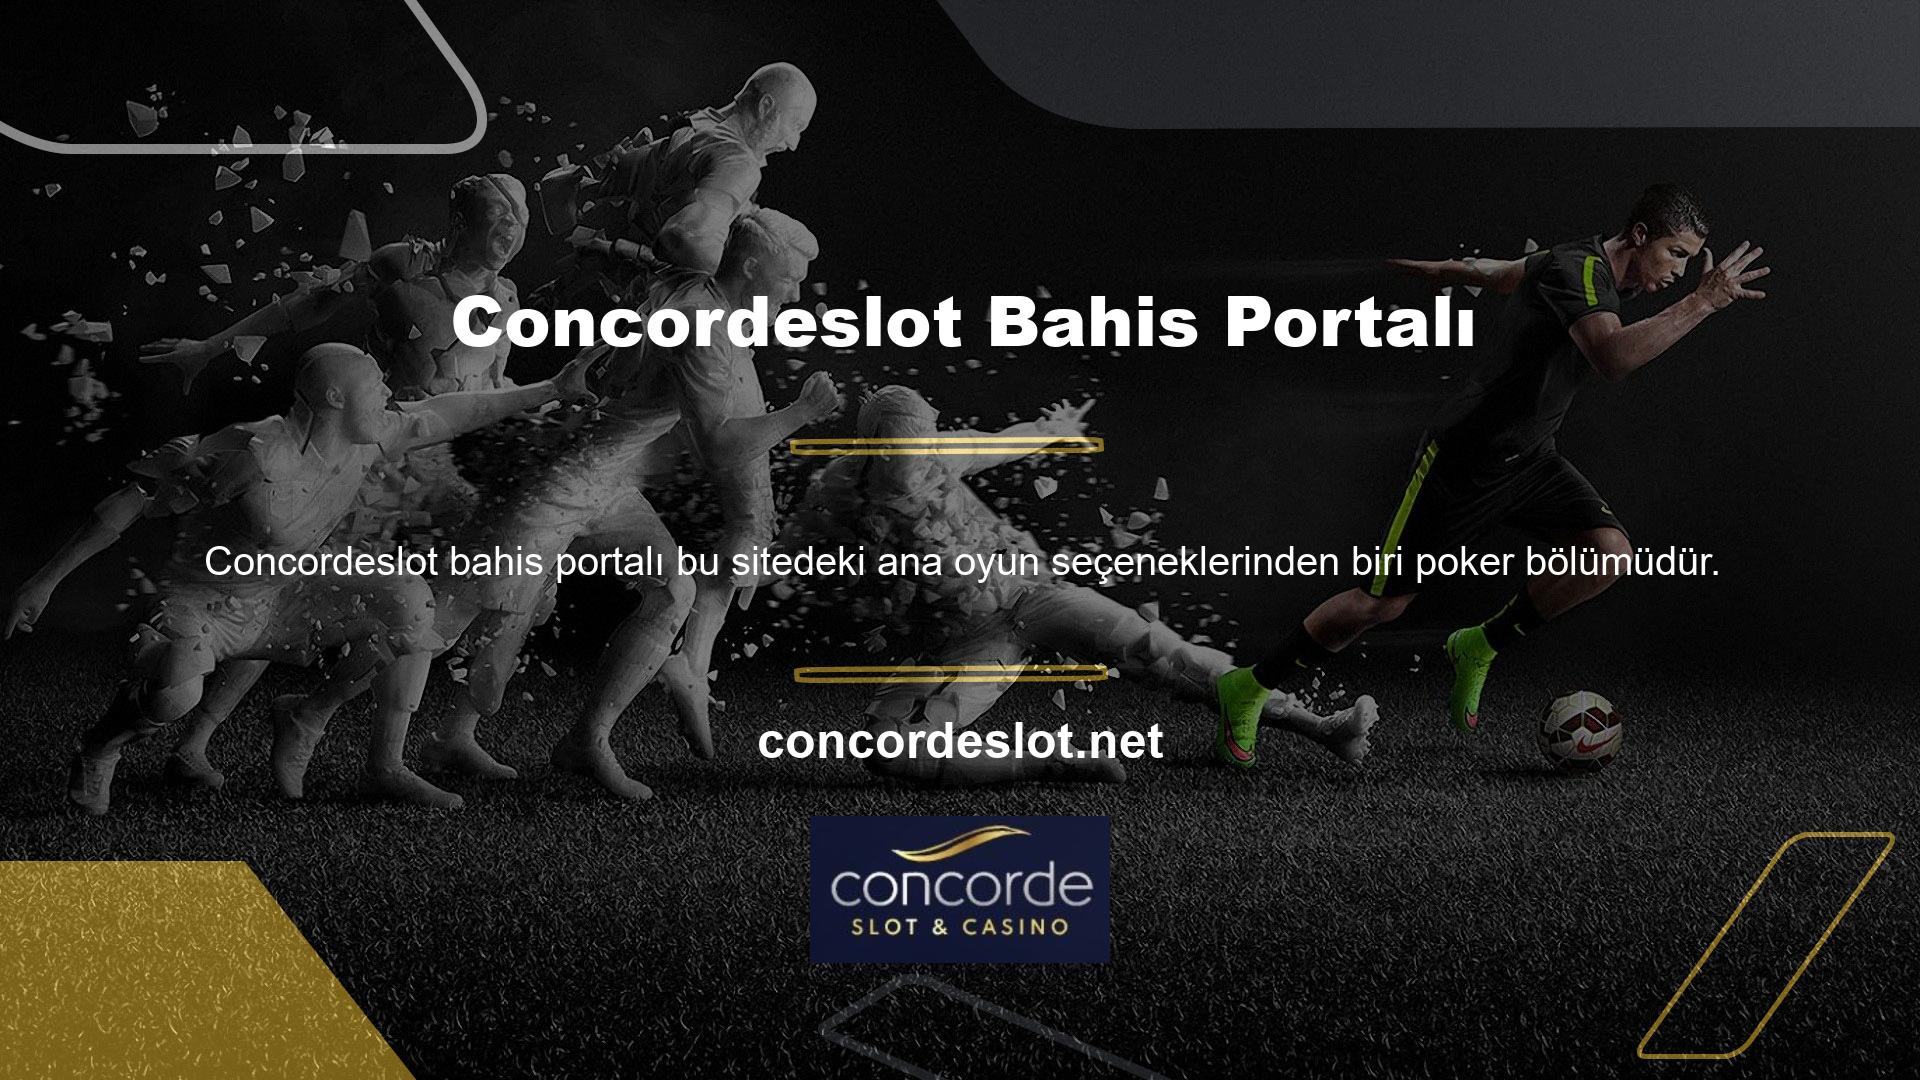 Concordeslot aynı zamanda poker bonusları da sunan bir sitedir